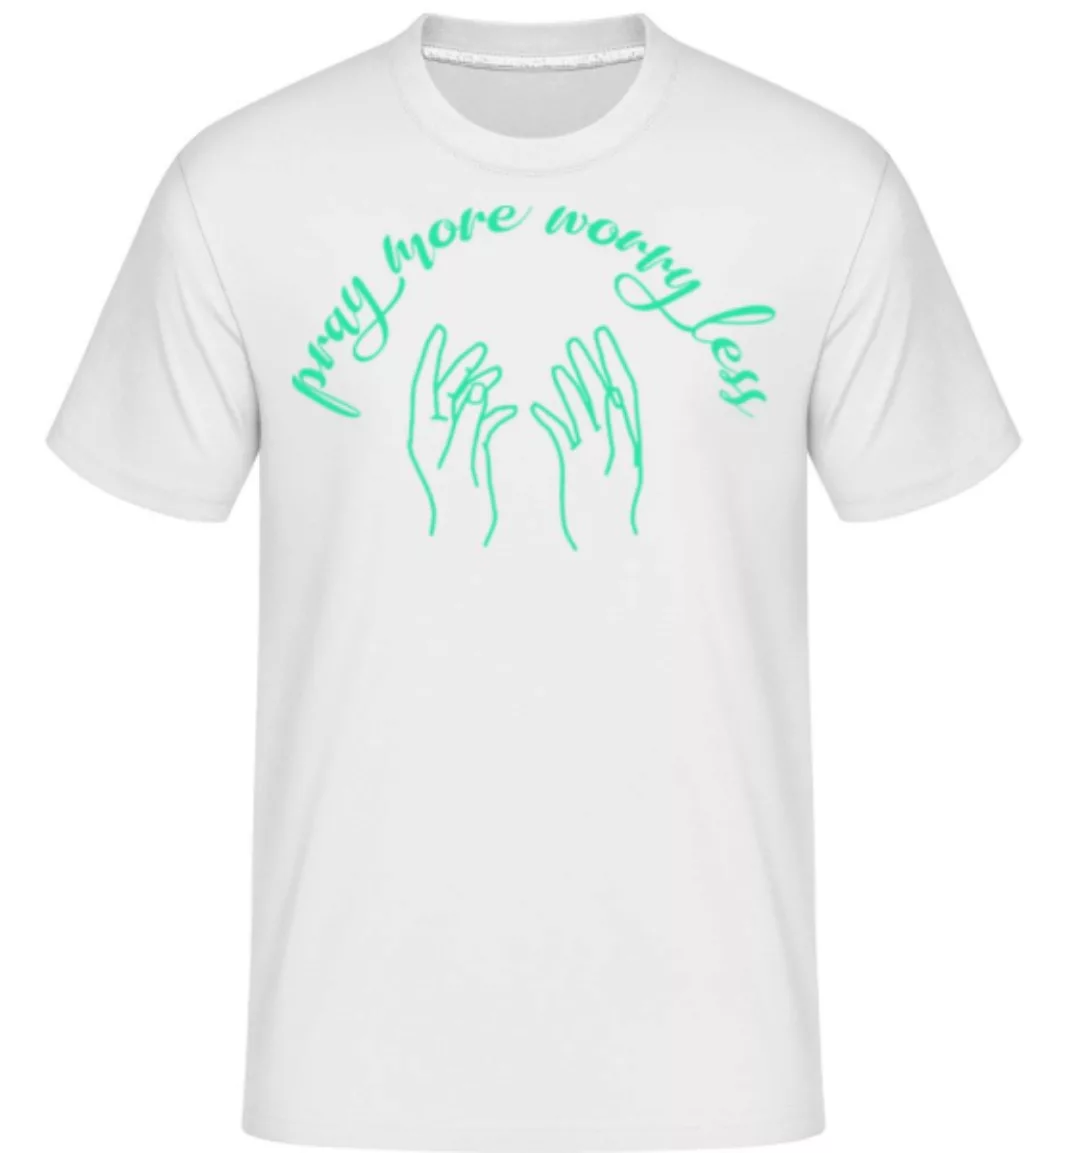 Pray More Worry Less · Shirtinator Männer T-Shirt günstig online kaufen